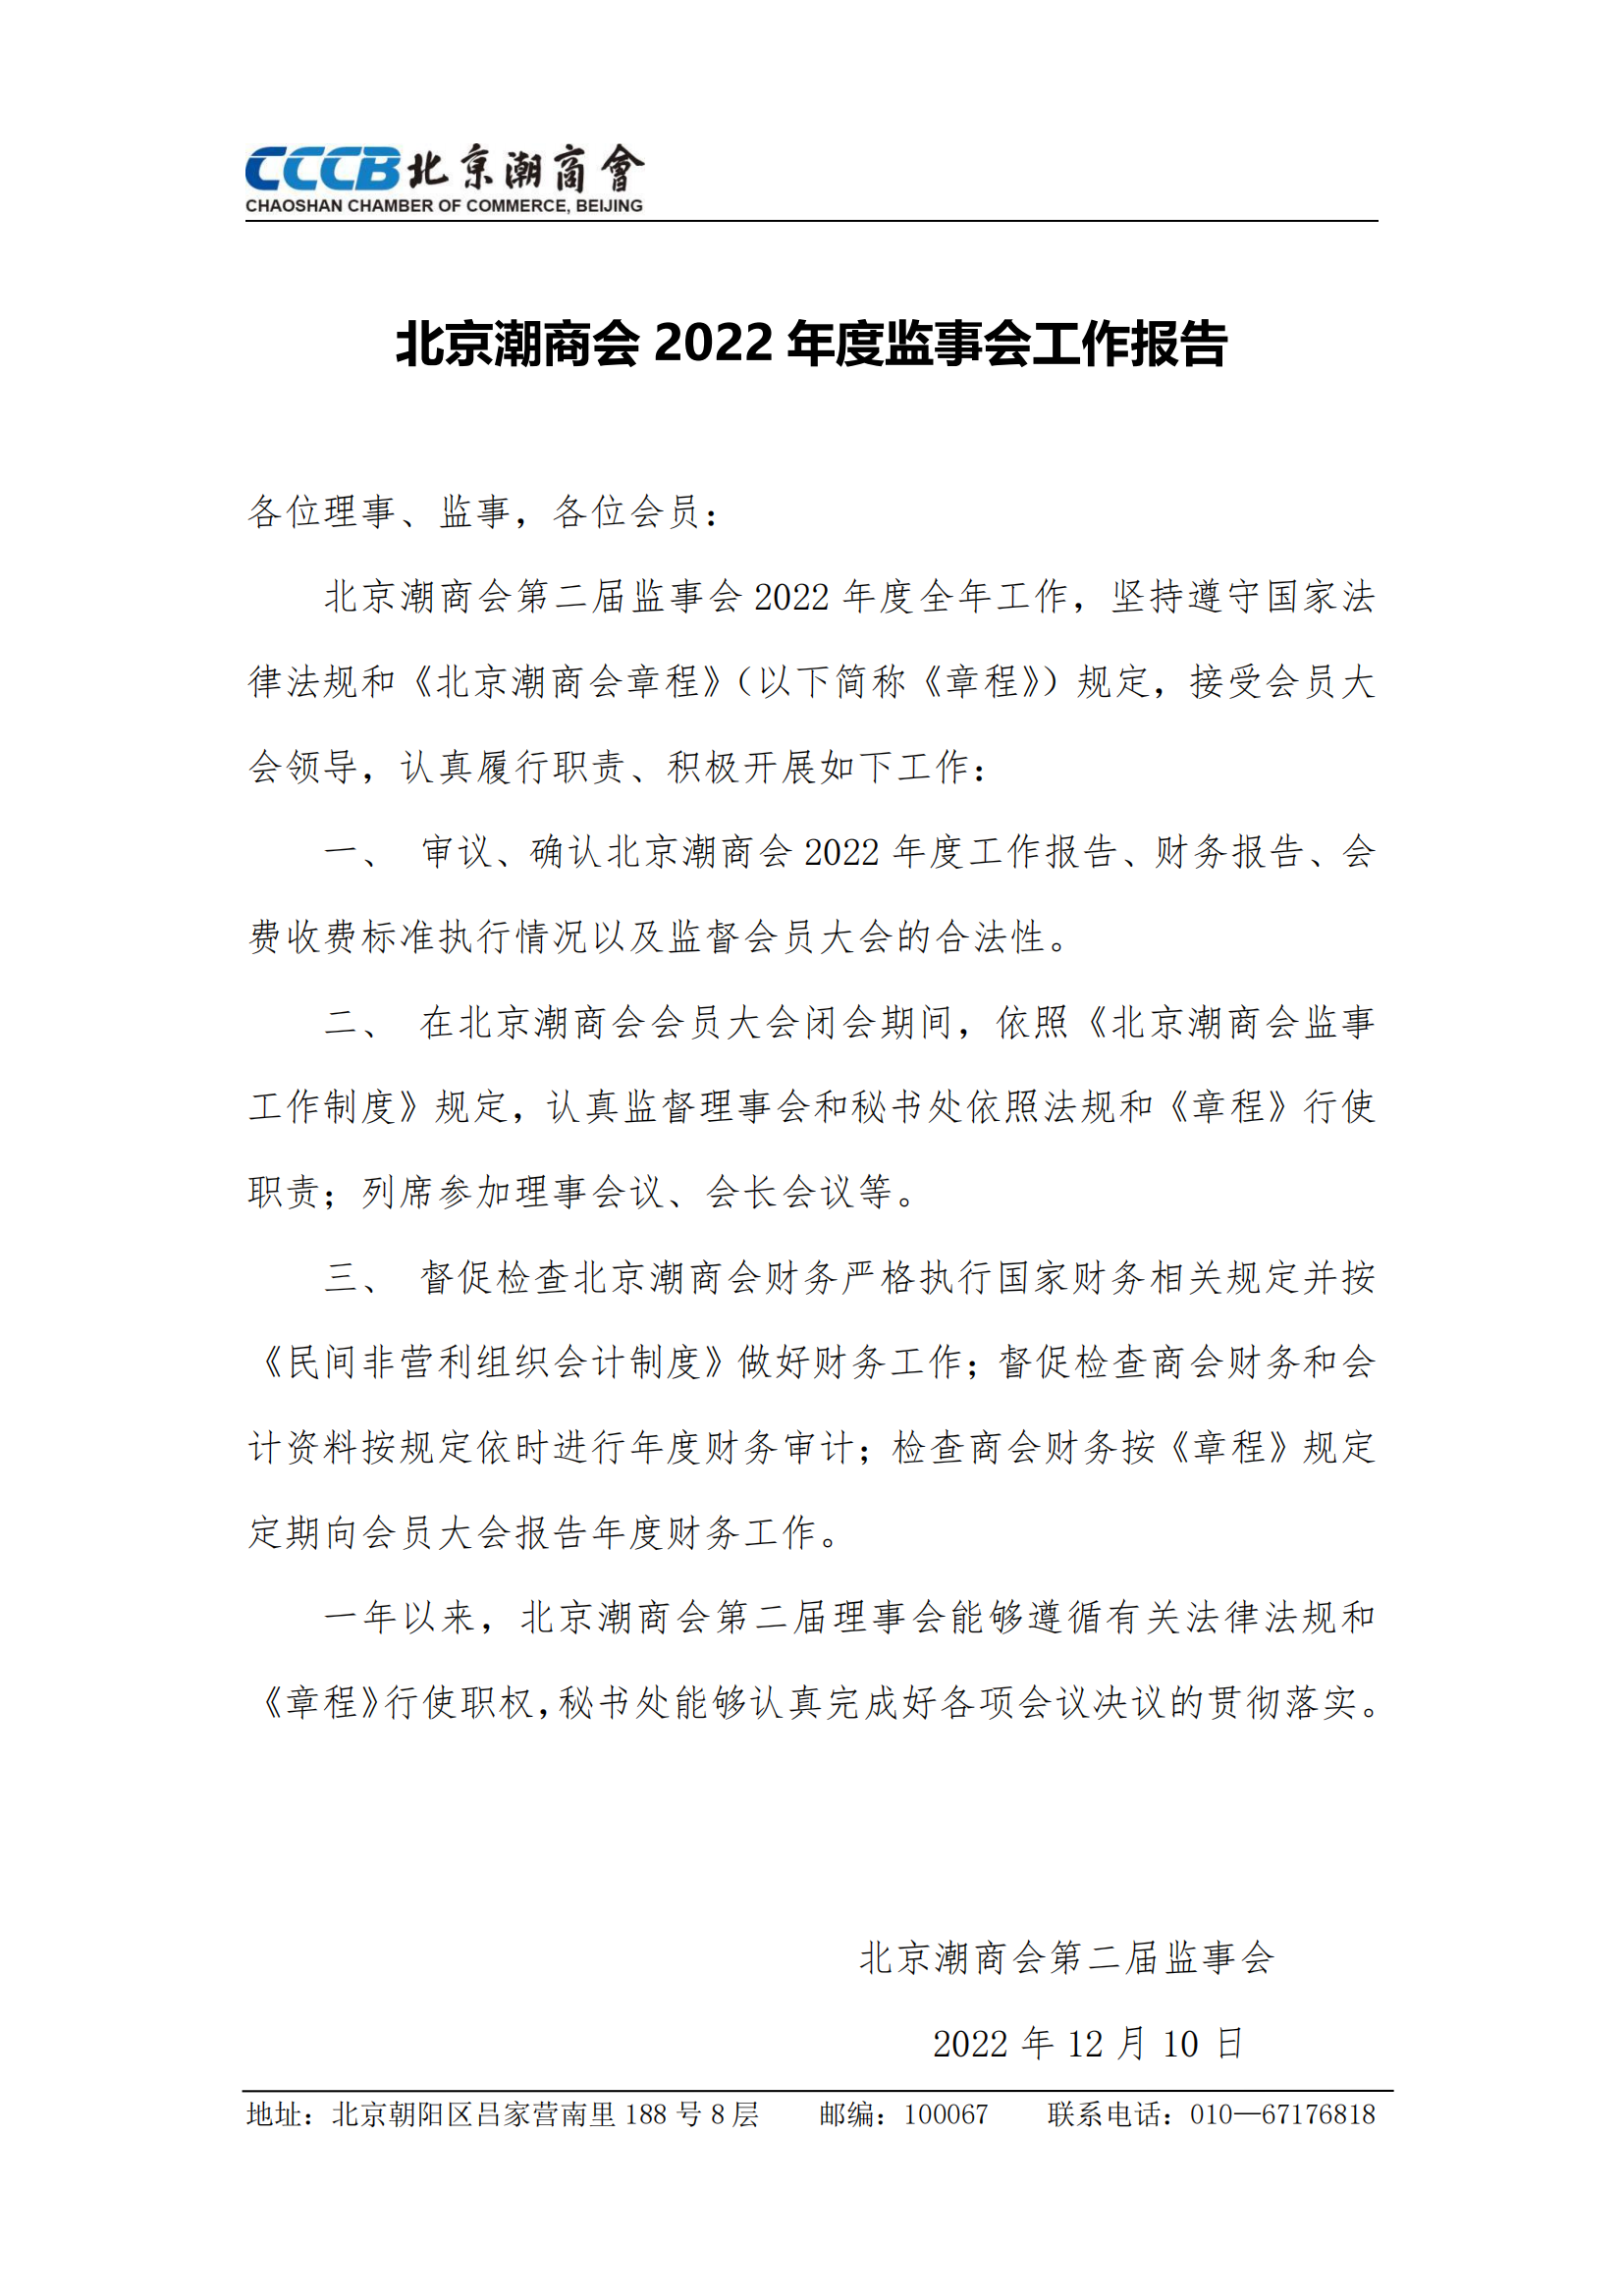 北京潮商会2022年度监事会工作报告